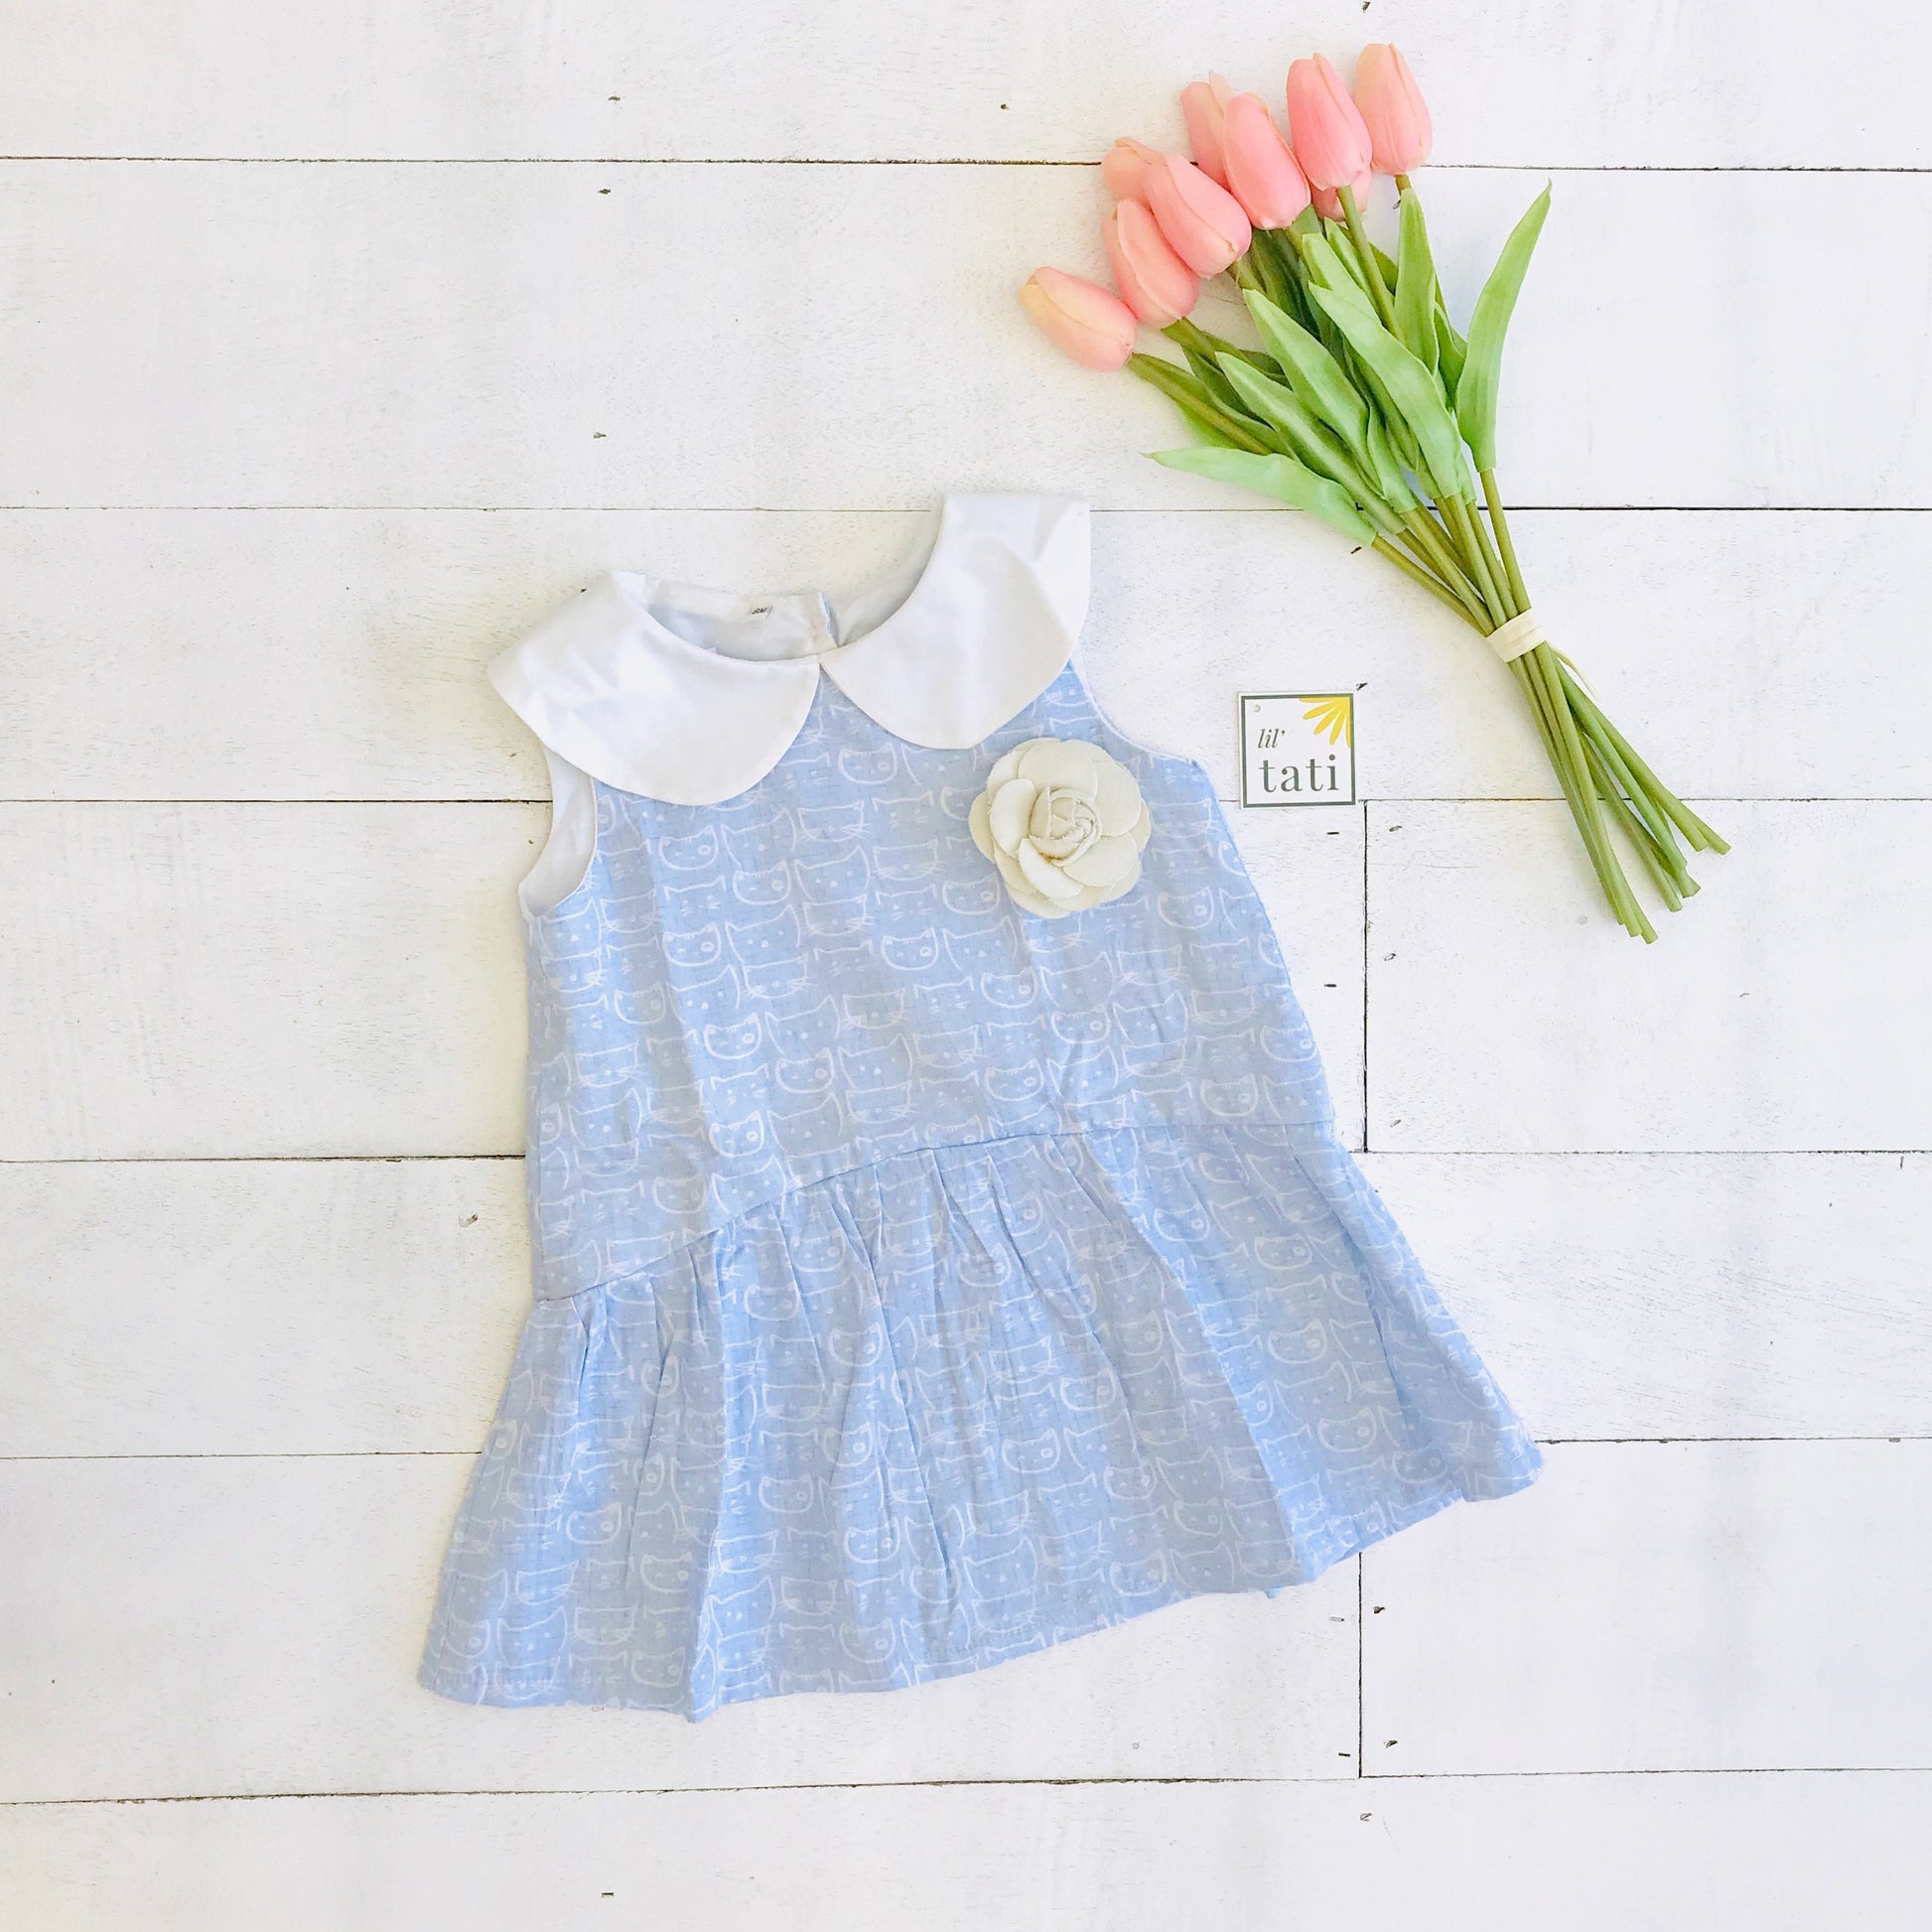 Daisy Dress in Cat Stamp Blue Print - Lil' Tati